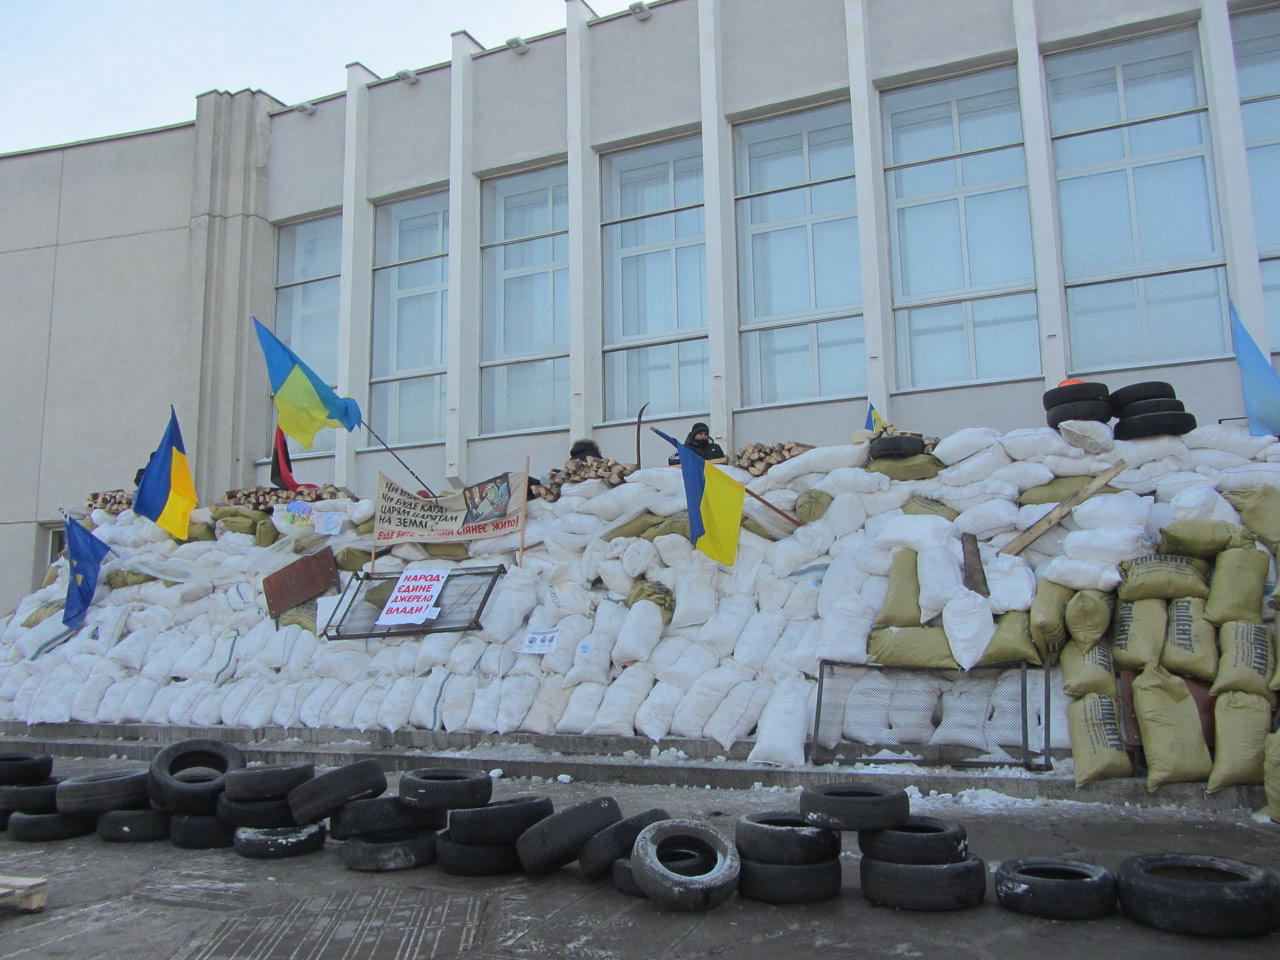 25 січня Олександр Удовіченко пустив мітингувальників у приміщення сесійної зали Полтавської обласної ради. Мітингувальники почали будувати барикаду зі снігу.